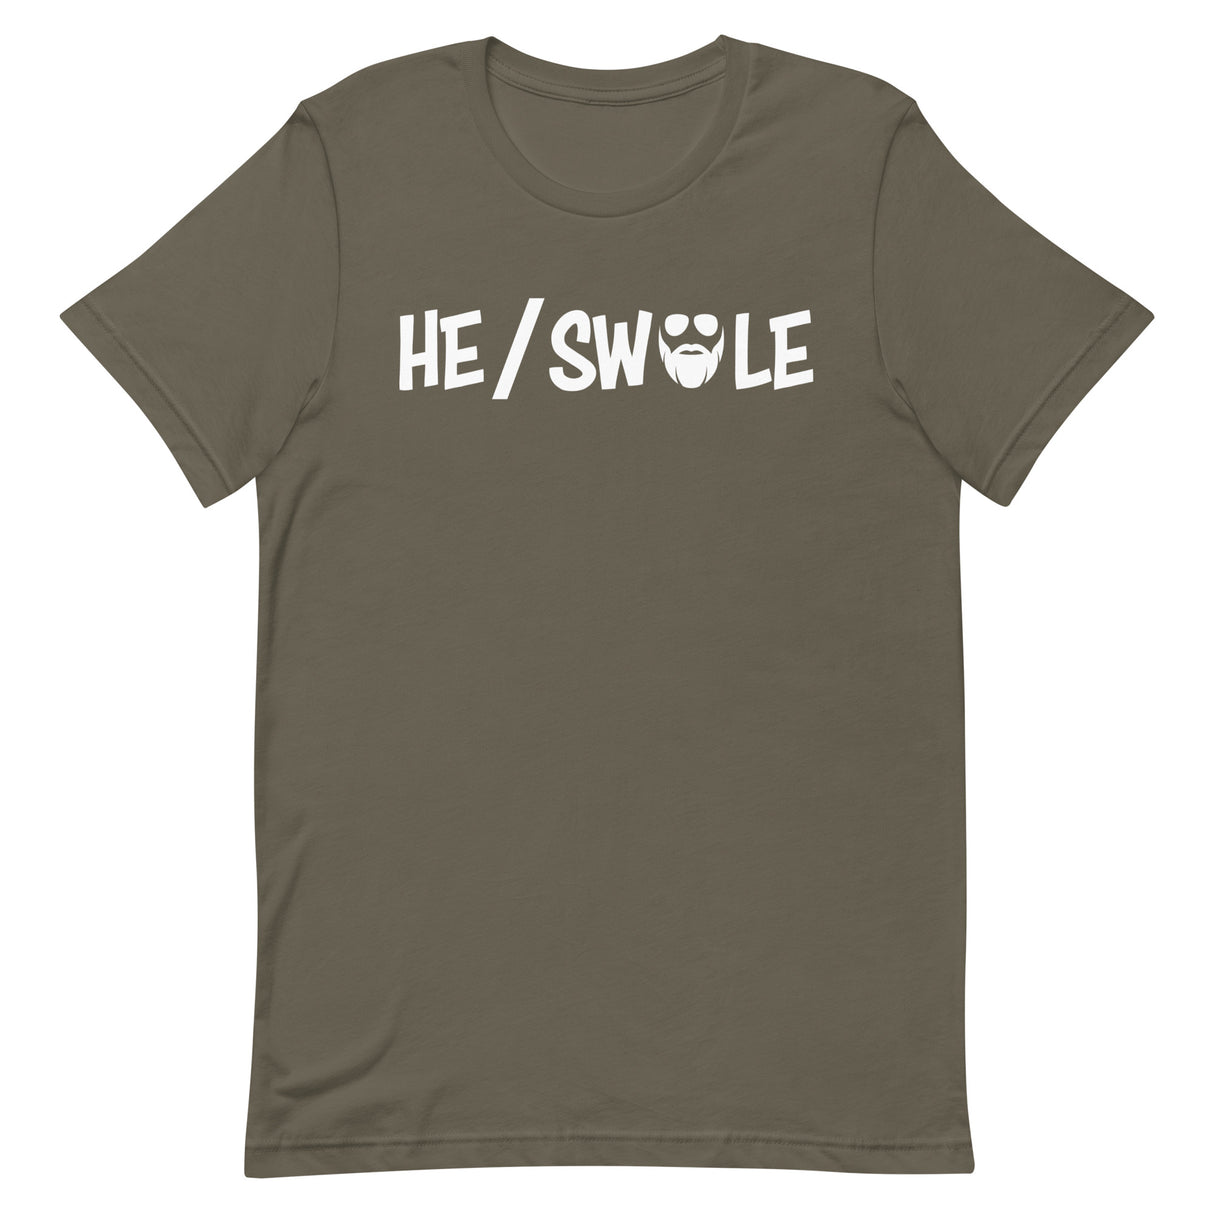 He/Swole T-Shirt